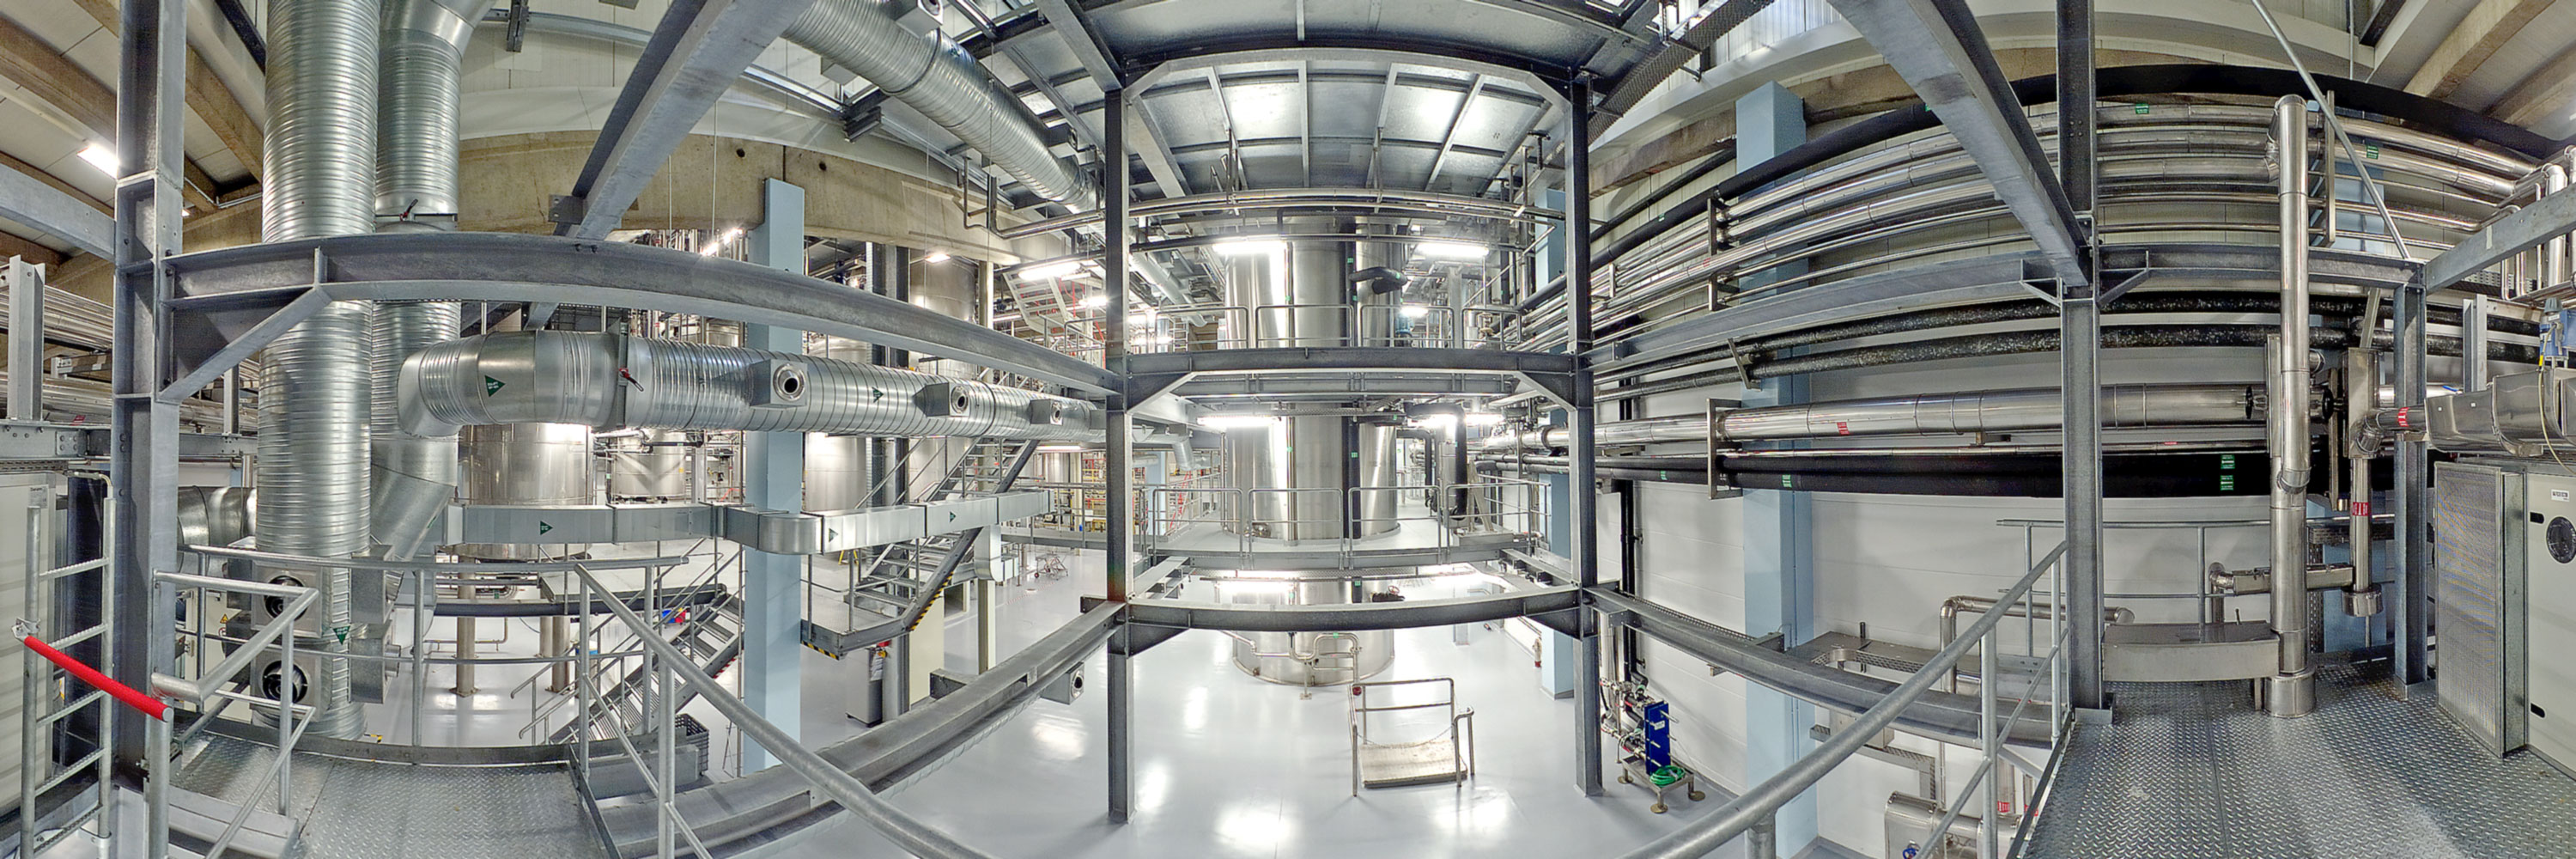 360-Grad Panorama-View in einer Industrieanlage